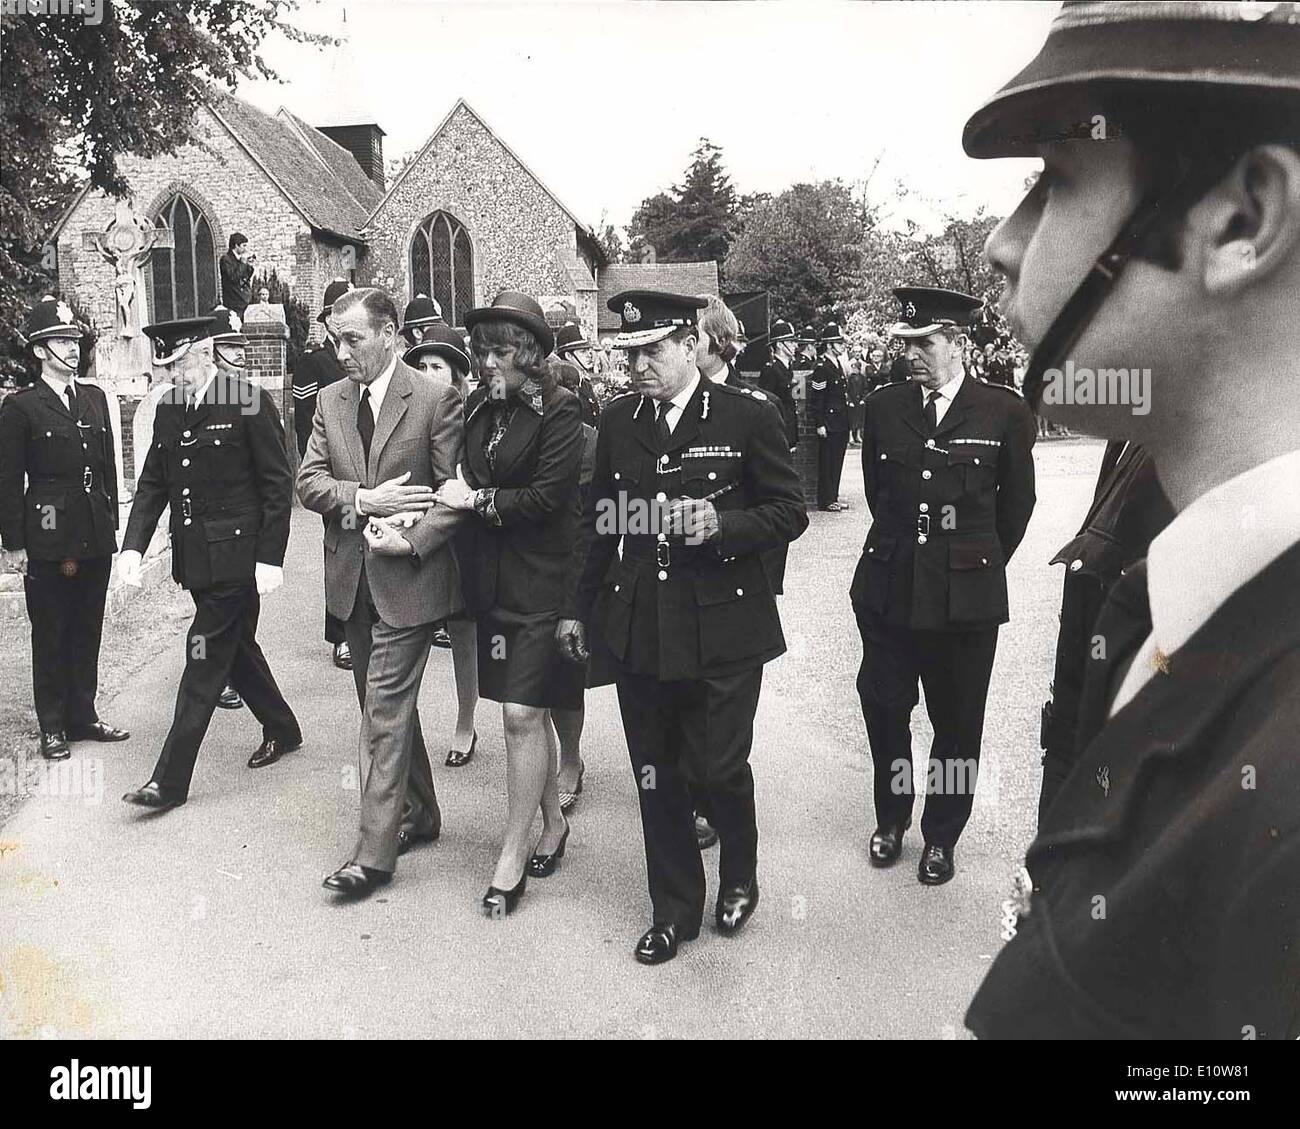 Apr 12, 1974 - Caterham, England, United Kingdom - La veuve d'un agents de police décédés est escorté dans son mari. Banque D'Images